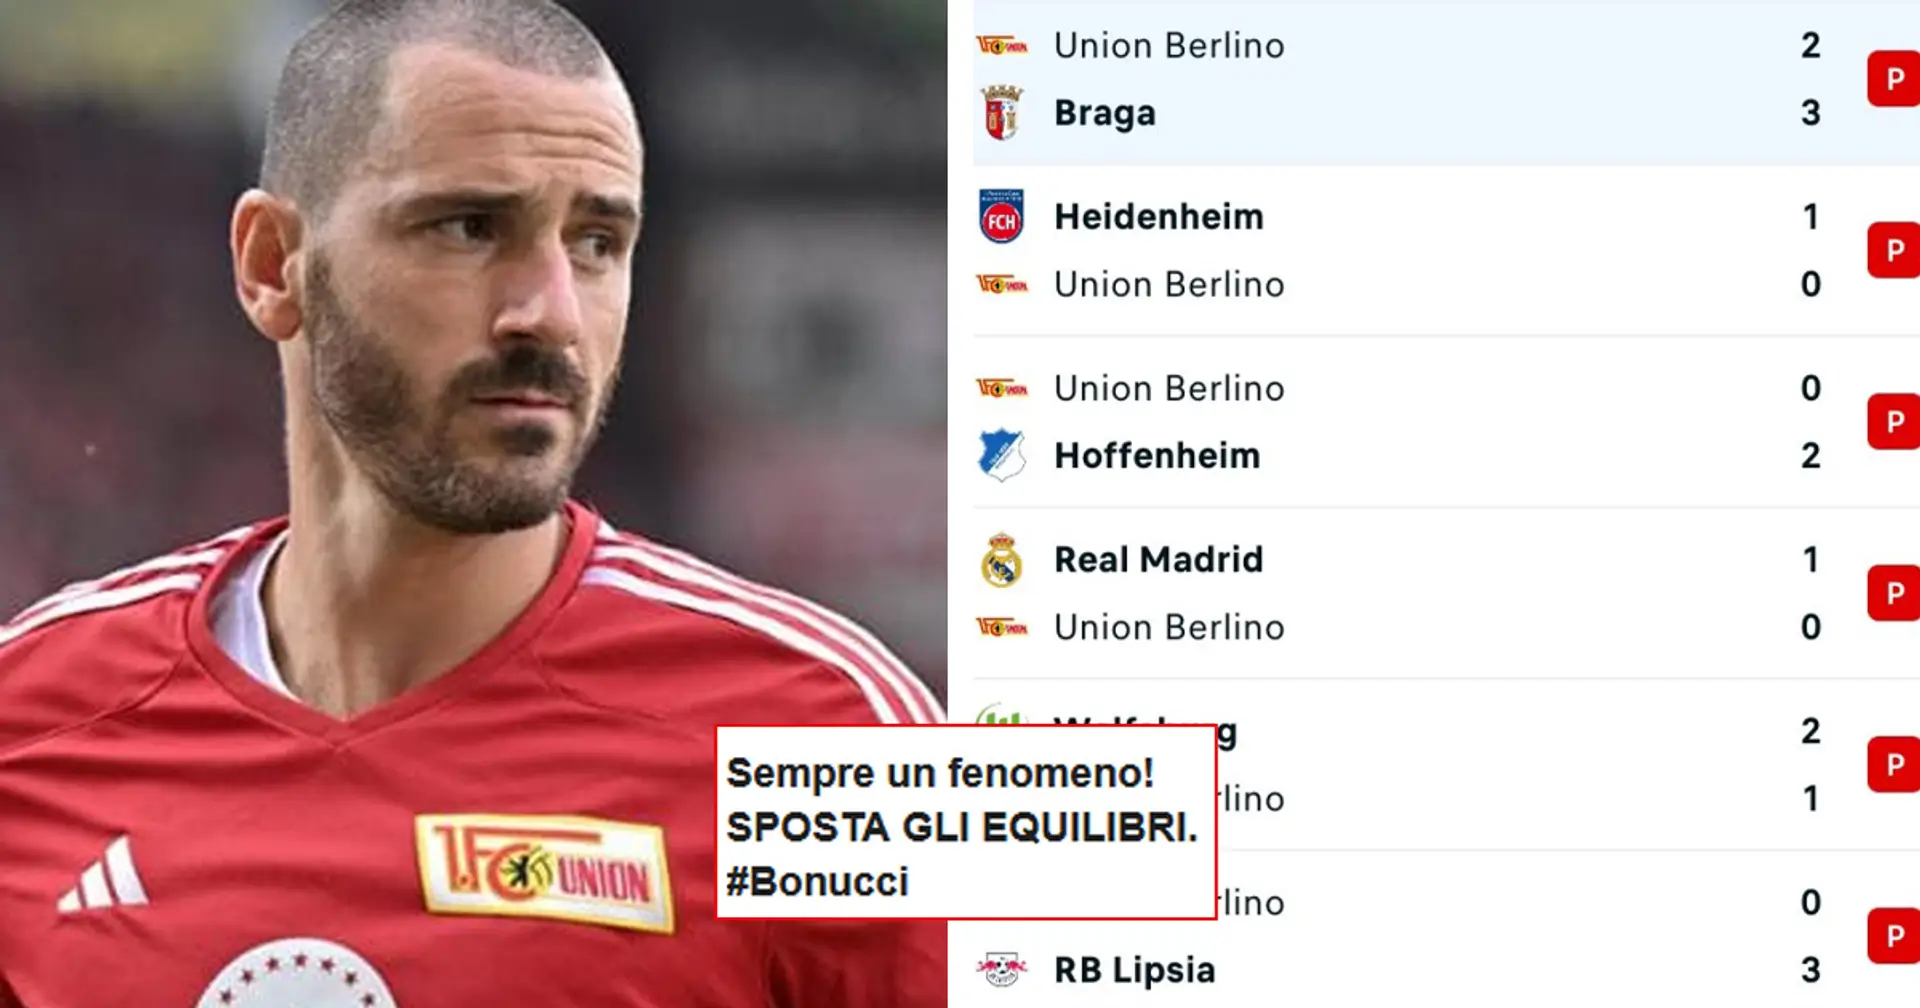 "Sposta gli equilibri!": 6 ko consecutivi per l'Union Berlino con Bonucci, scoppia l'ironia dei tifosi della Juve